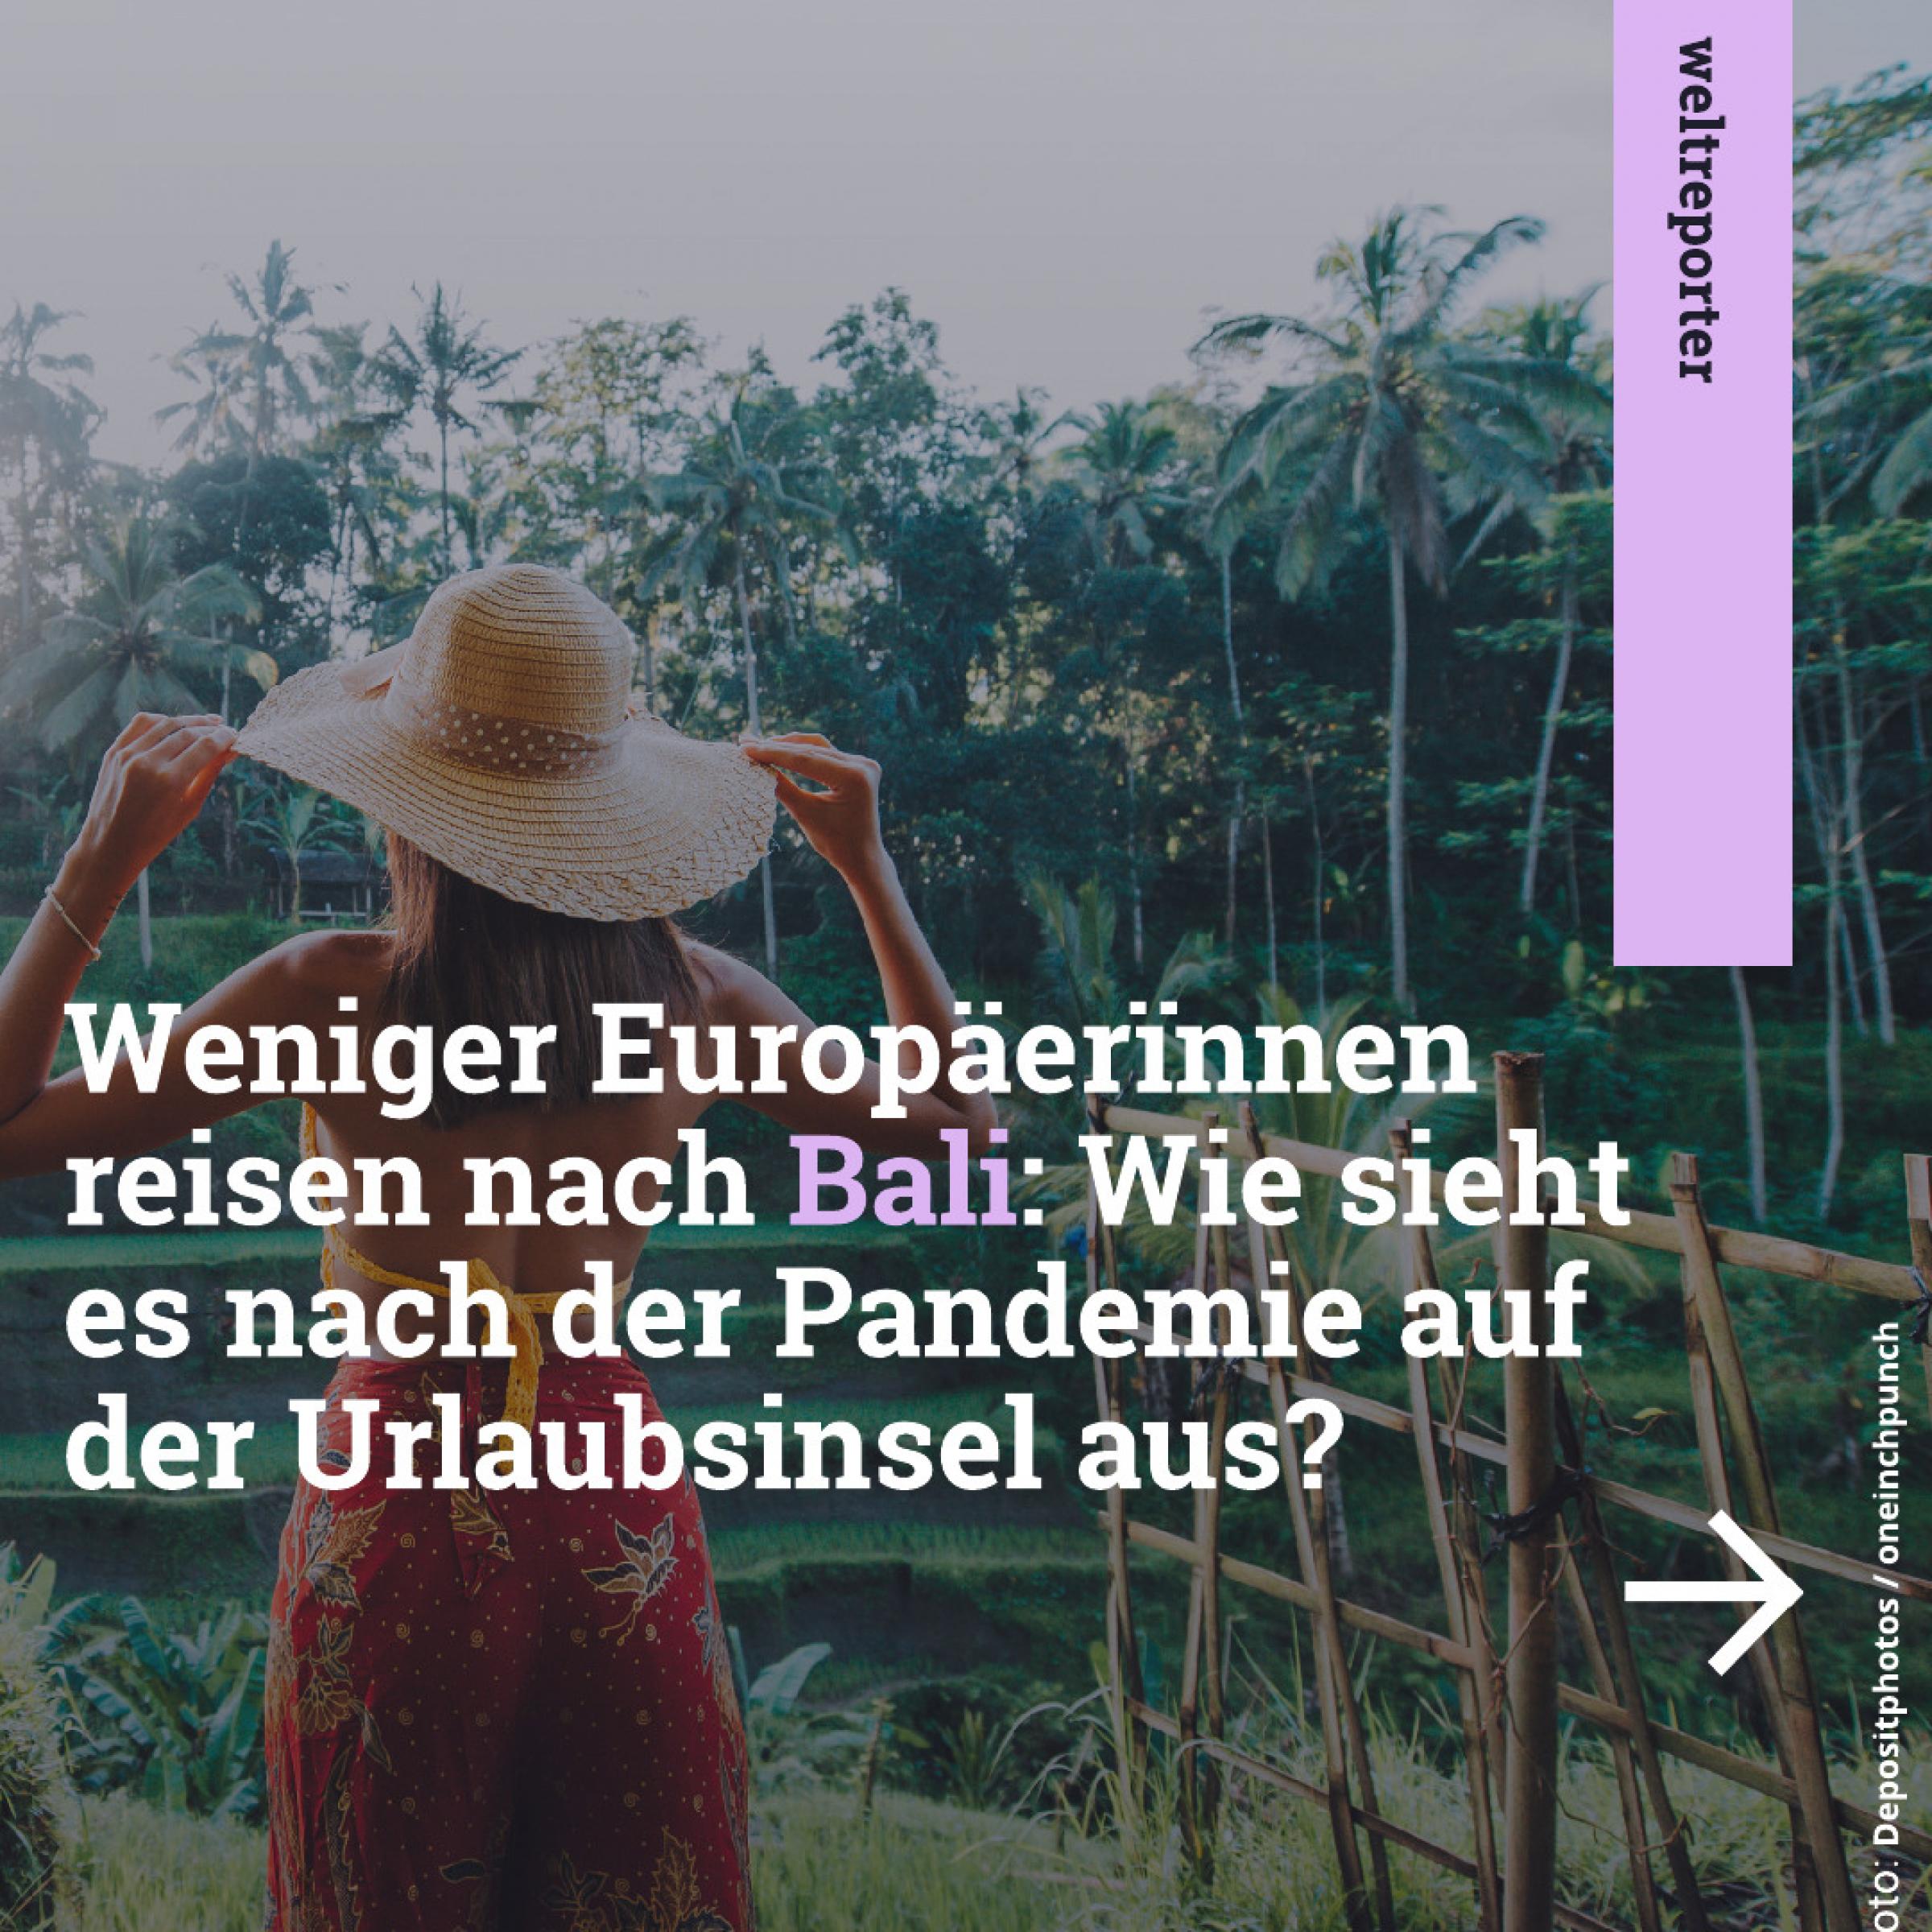 Frau mit Hut vor Reisterassen auf Bali im Hintergrund; Text davor: Weniger Europäerïnnen reisen nach Bali: Wie sieht es nach der Pandemie auf der Urlaubsinsel aus?